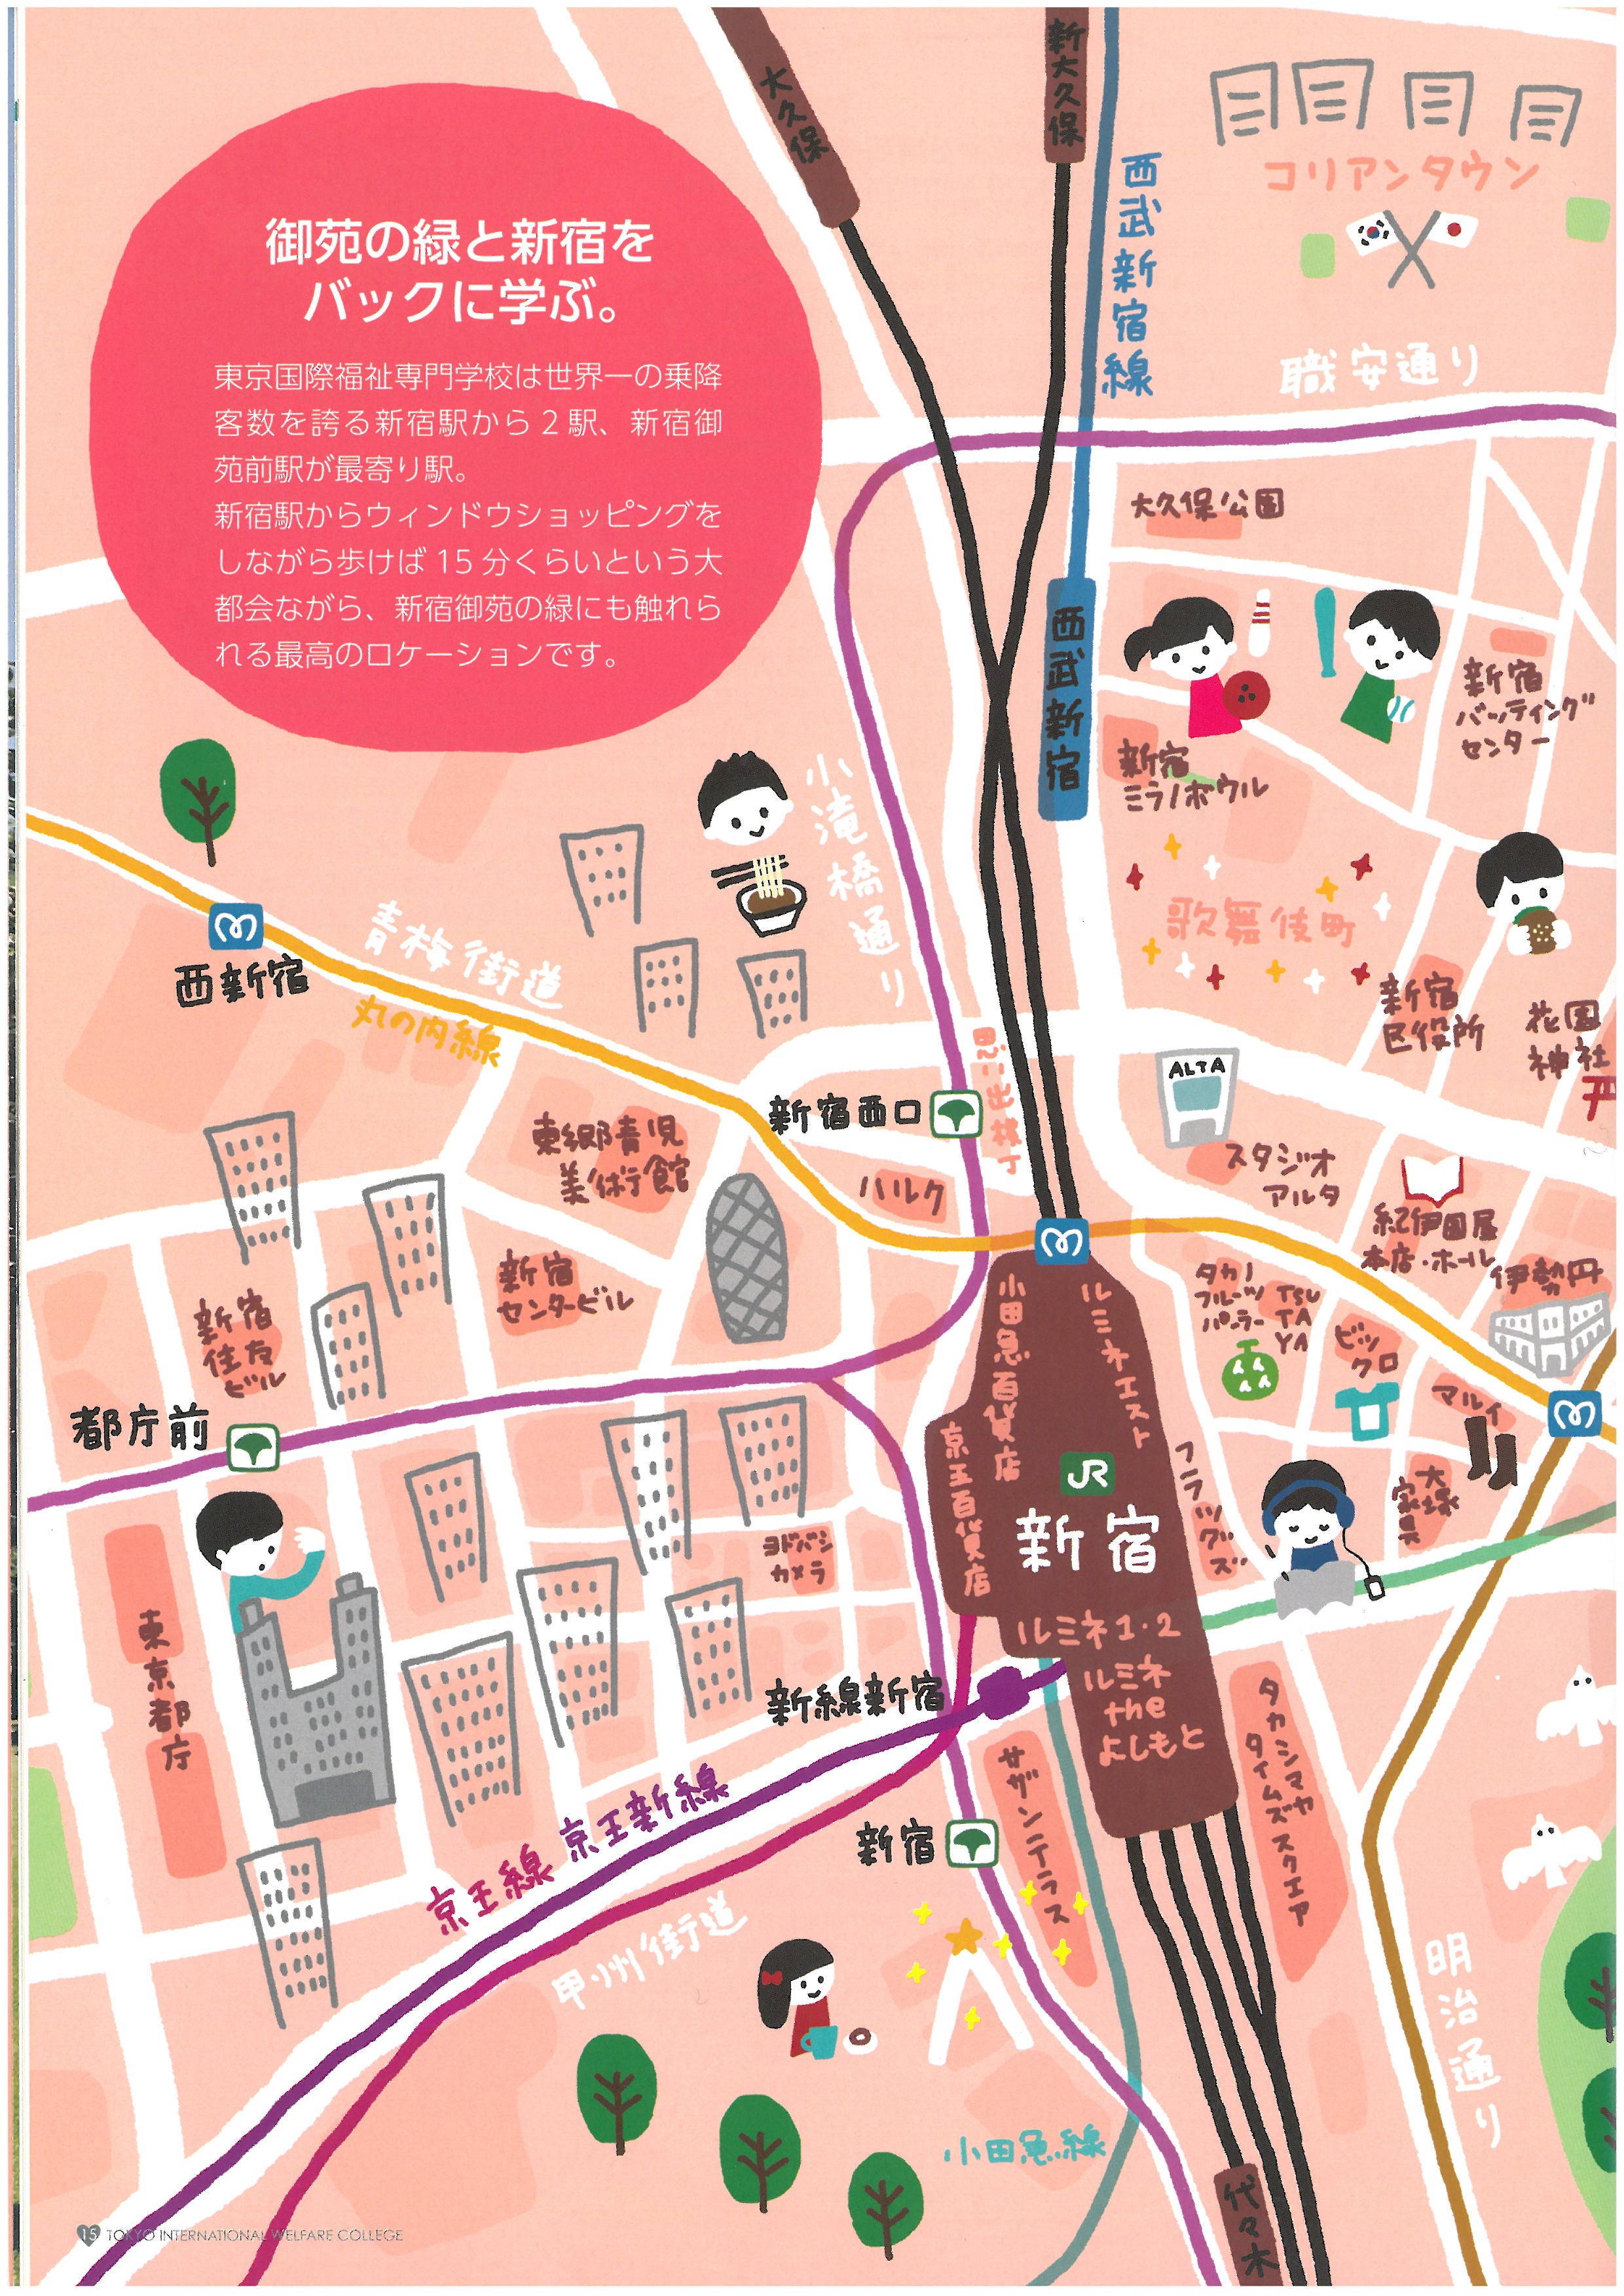 도쿄 국제복지전문학교 홍보 팜플렛 16.jpg